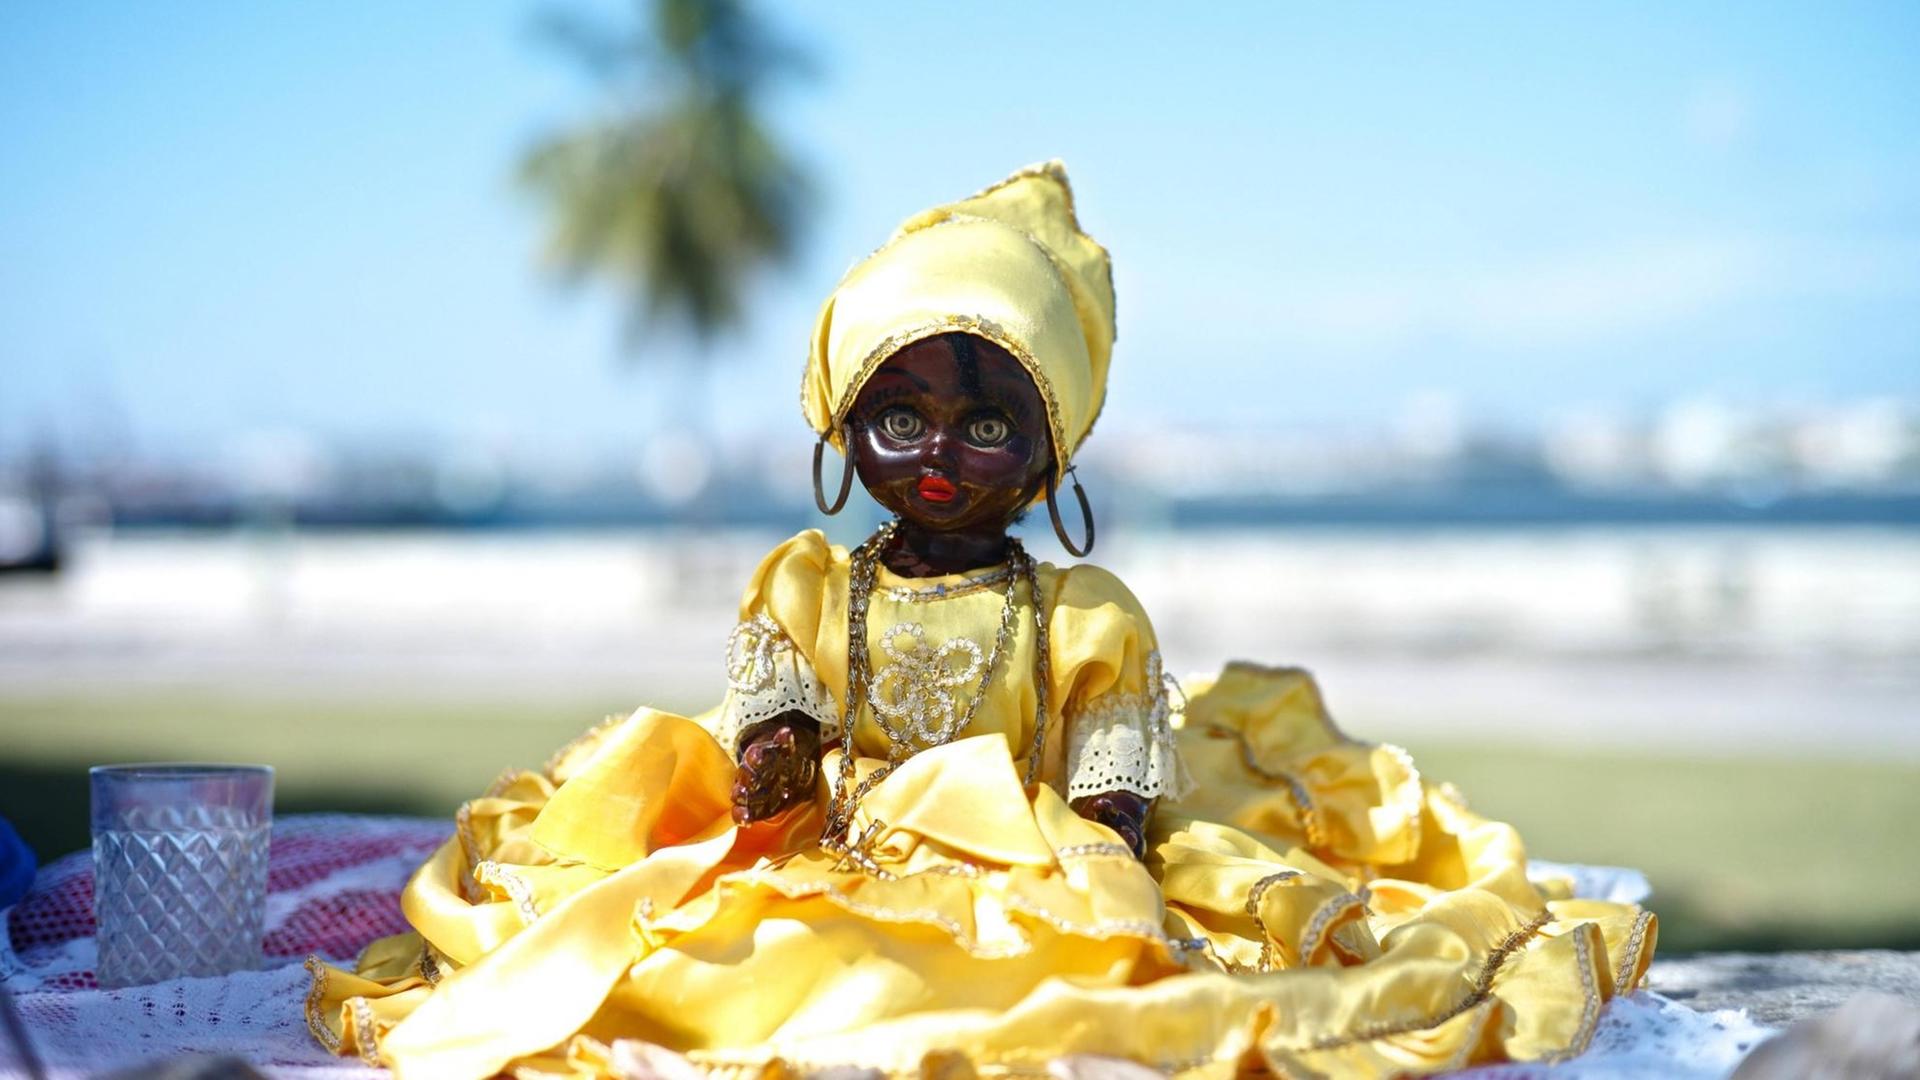 Eine Santería-Puppe in Havanna: Gelb ist die Farbe der Göttin Ochún, die in der afro-kubanischen Religion der Jungfrau Maria in Form der Barmherzigen Jungfrau von Cobre, der Schutzpatronin Kubas, entspricht.